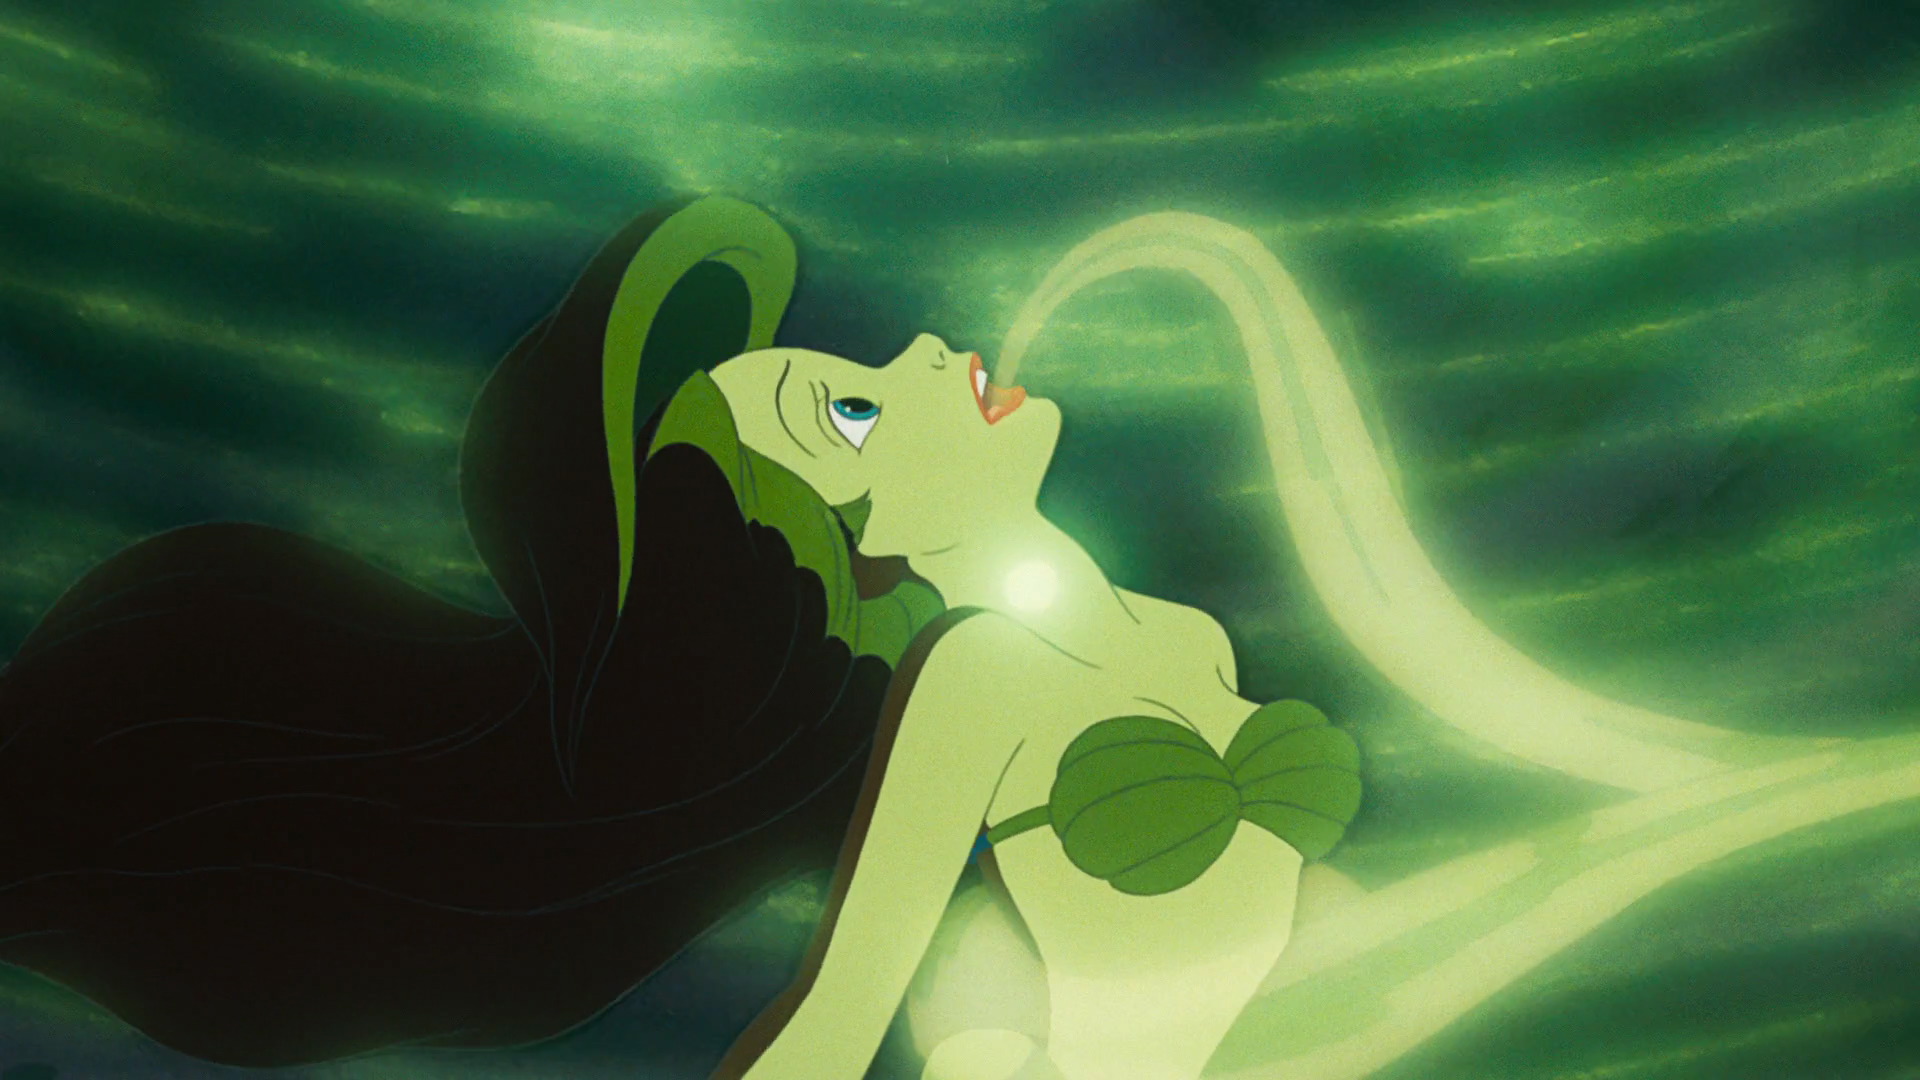 O topete indestrutível do Ariel foi a melhor coisa que aconteceu